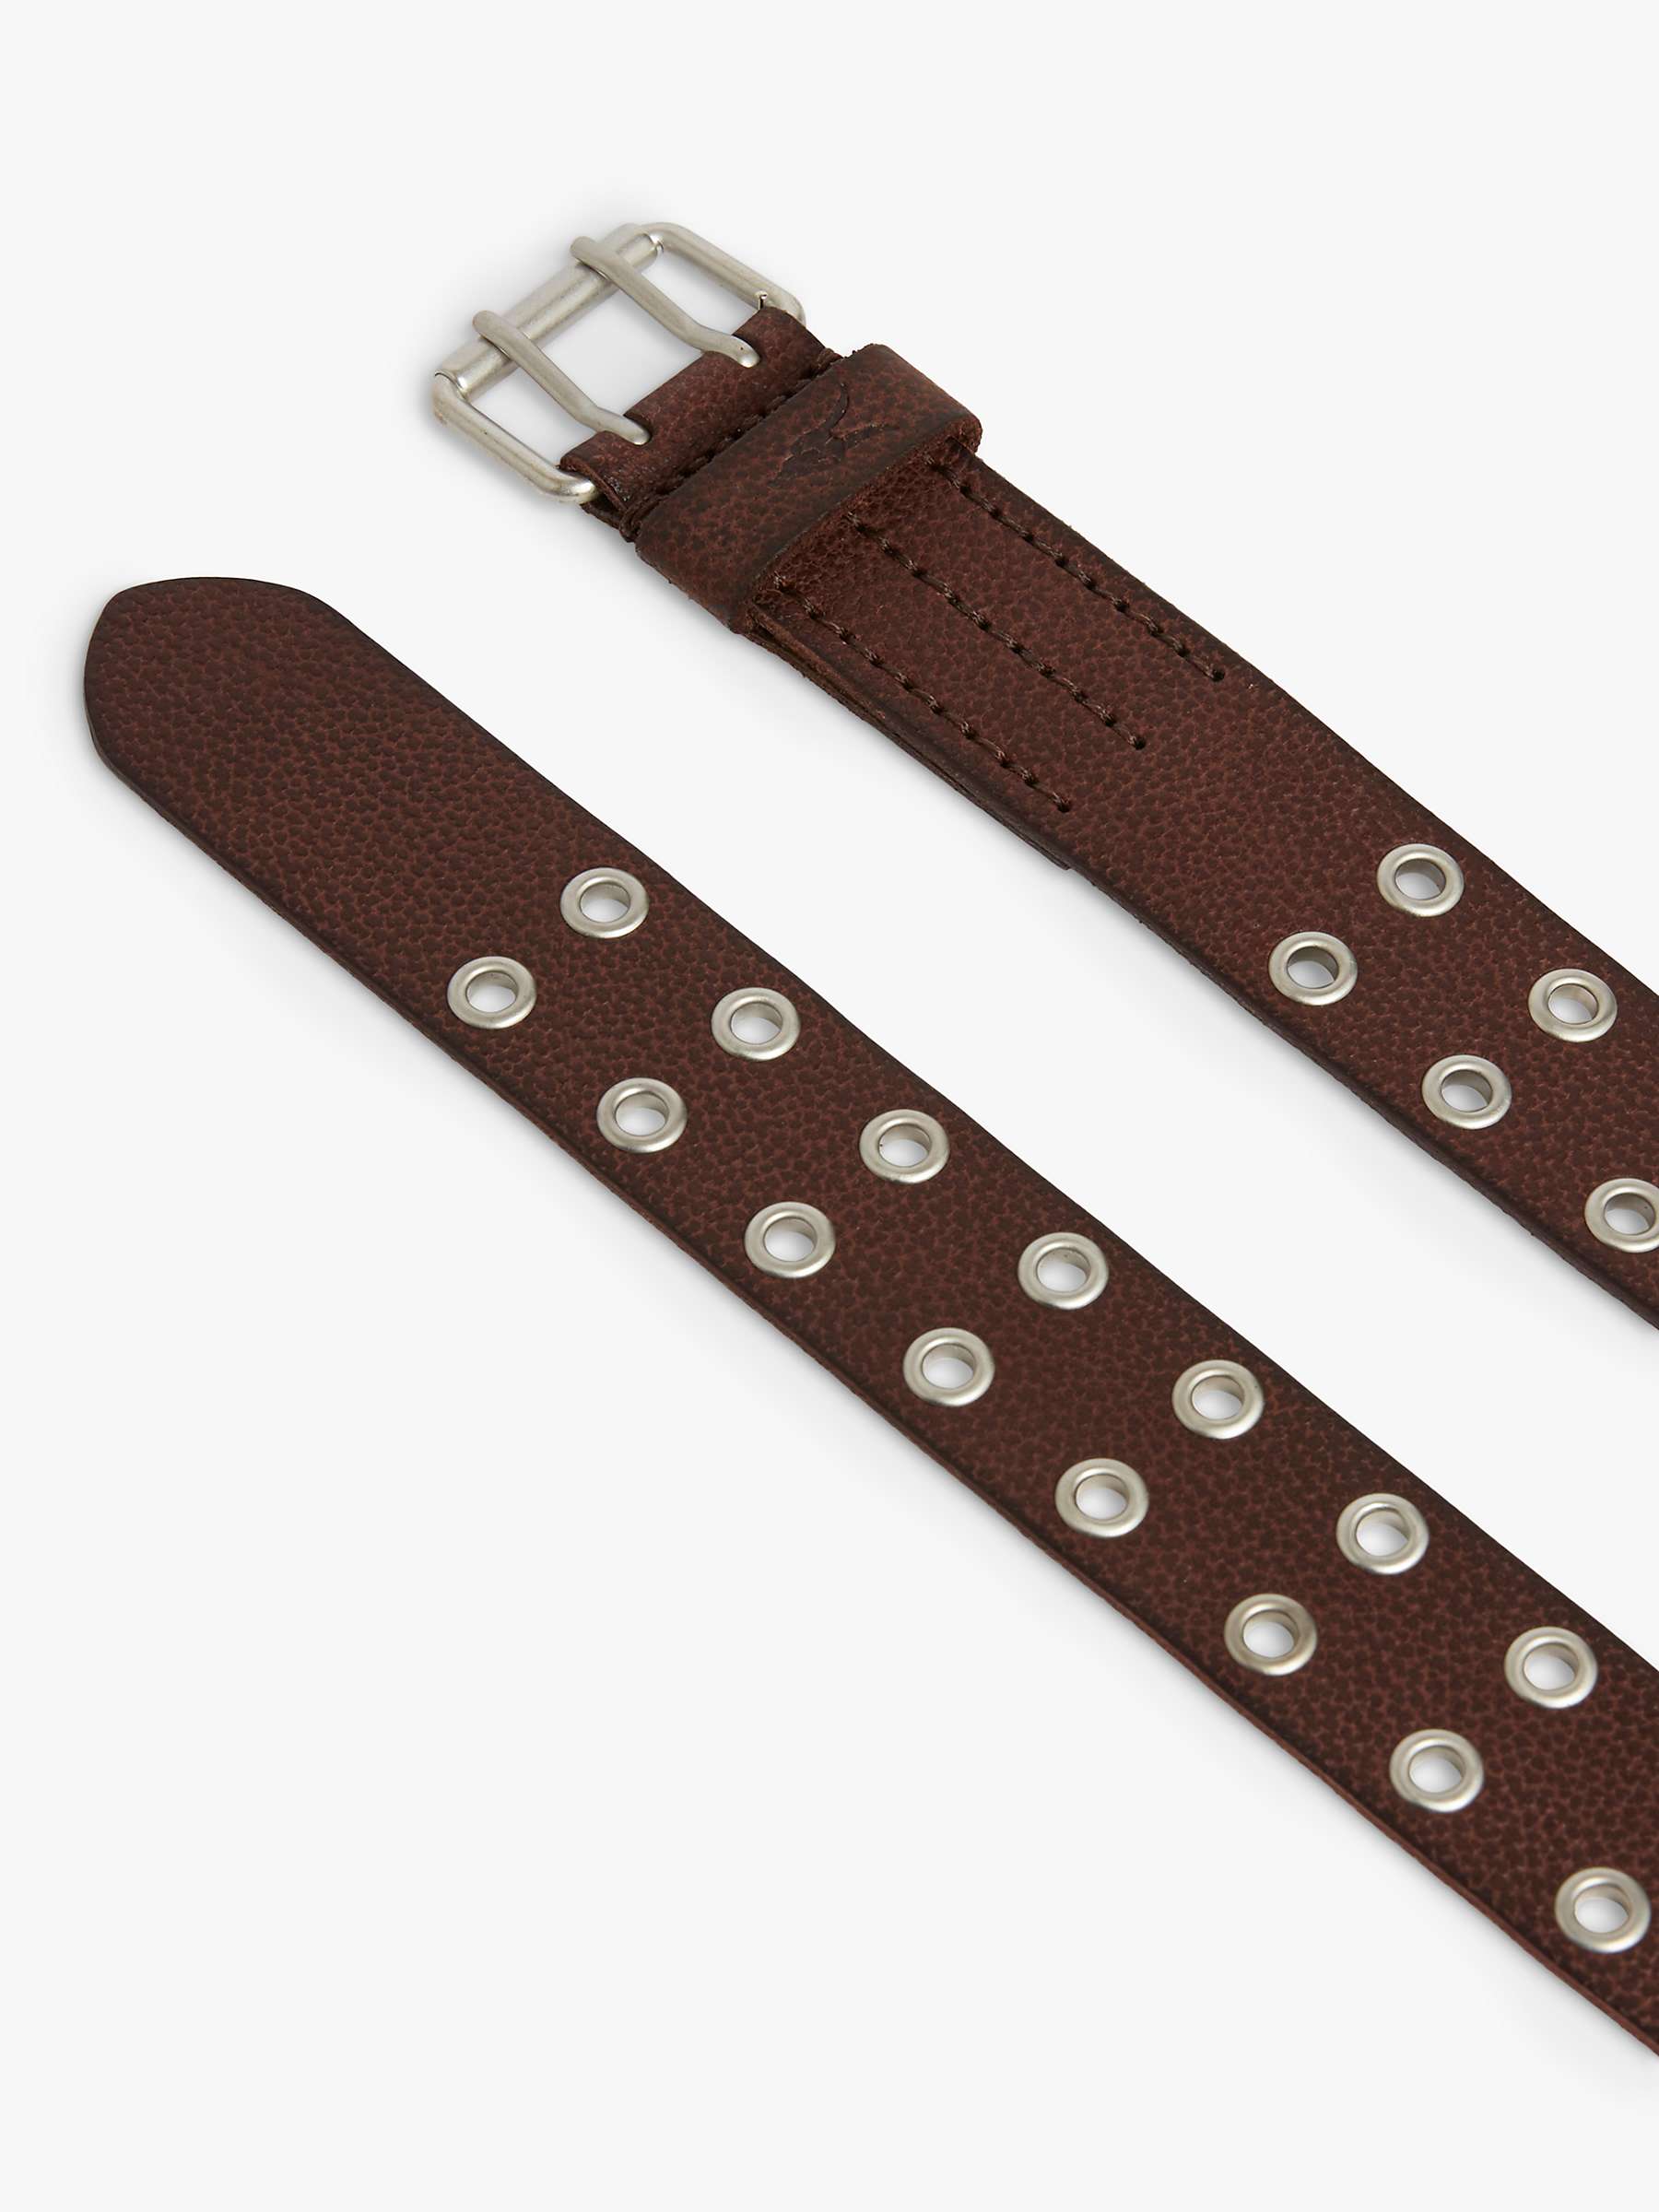 Buy AllSaints Sturge Studded Leather Belt, Brown Online at johnlewis.com